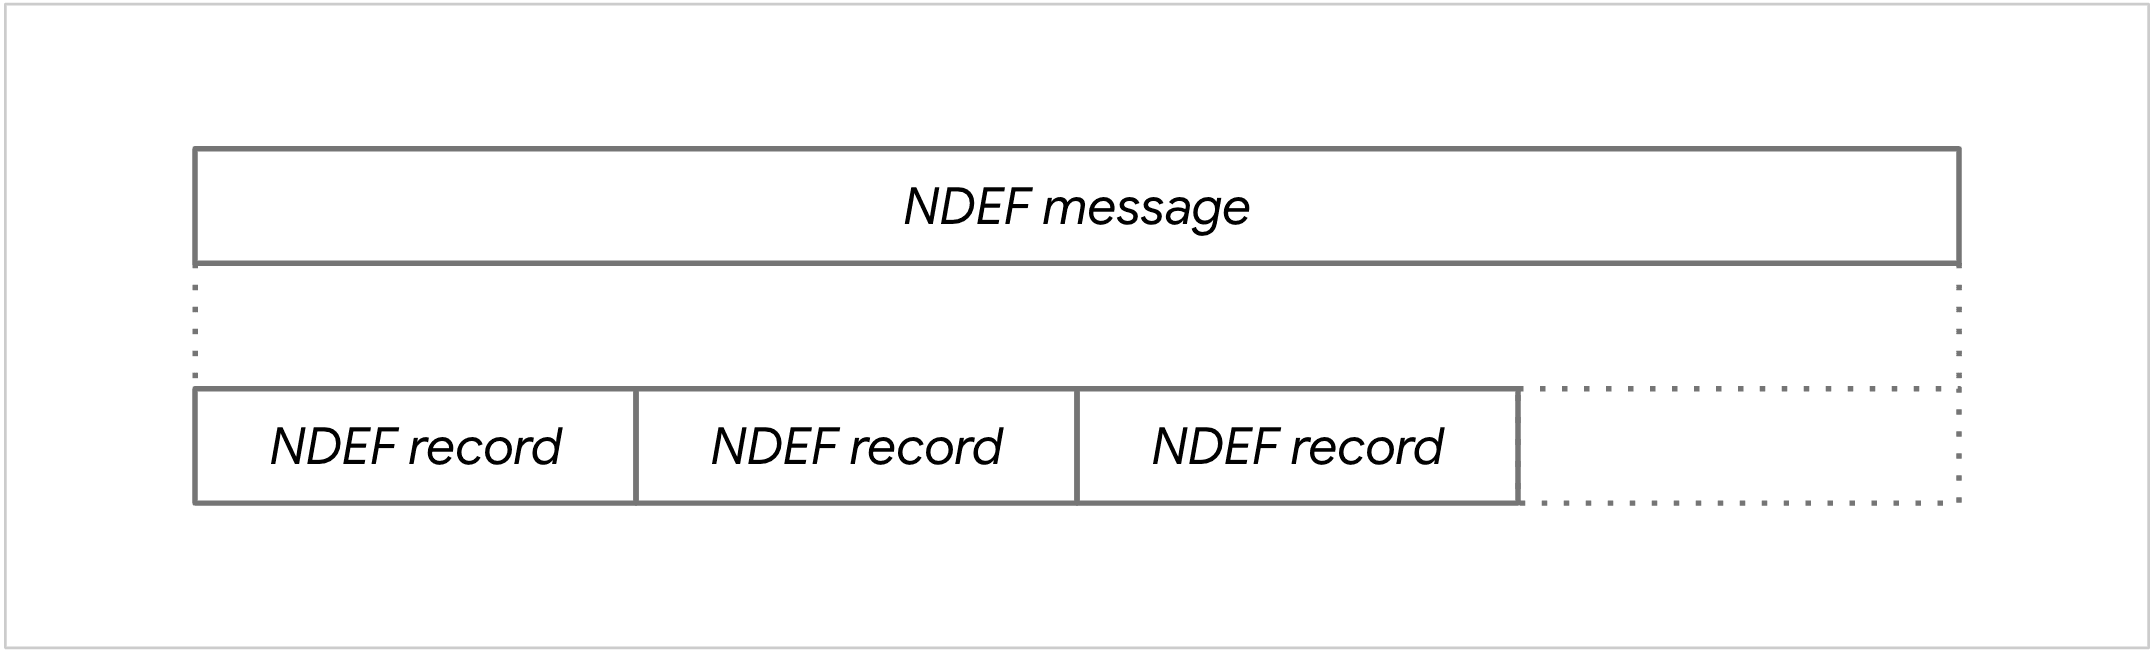 NDEF मैसेज का डायग्राम